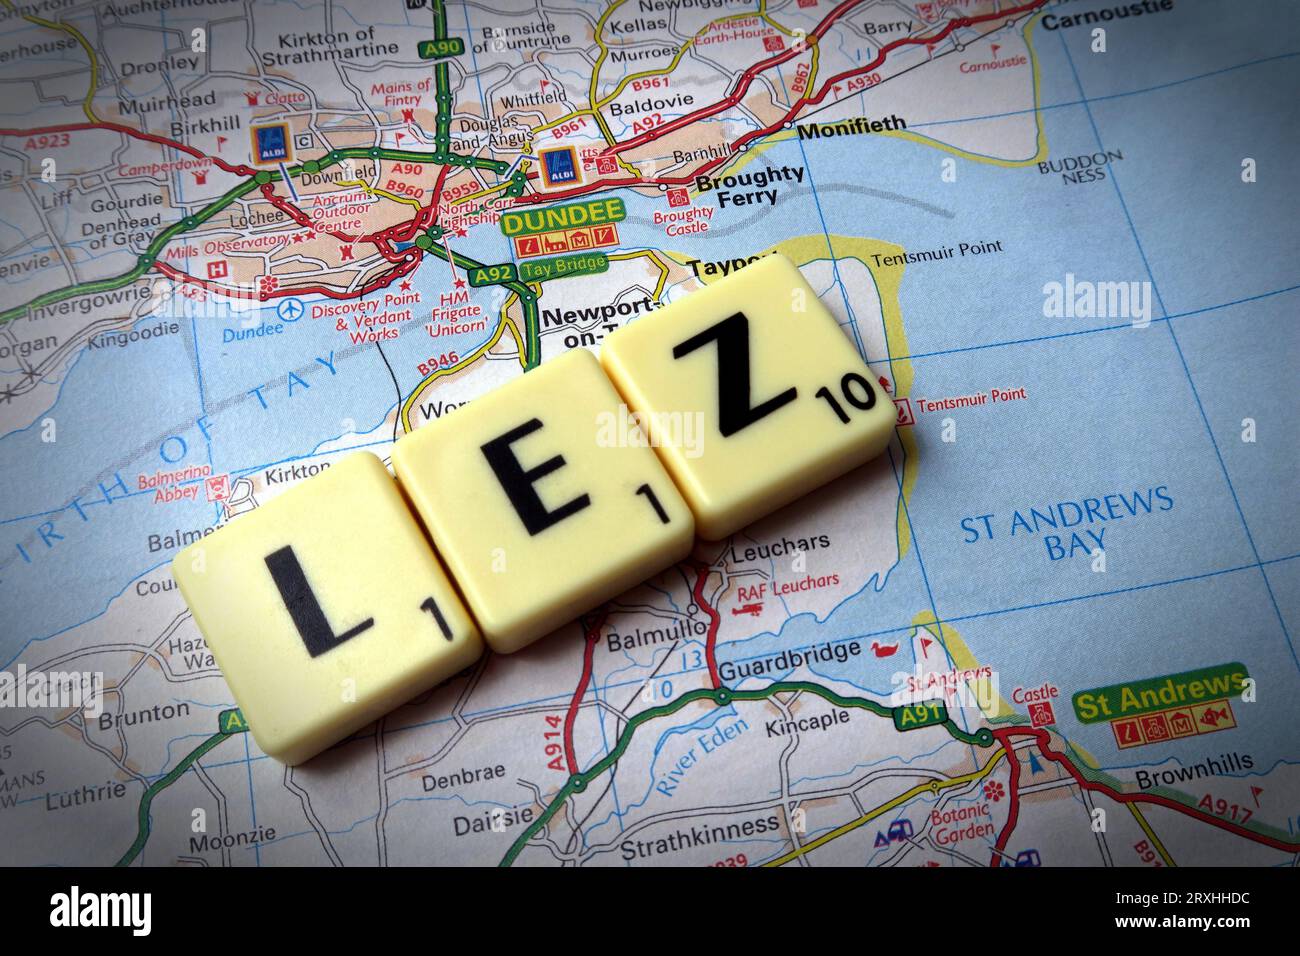 Dundee LEZ Low Emission zone - en mots, en lettres scrabble sur une carte - DD1 1DD Banque D'Images